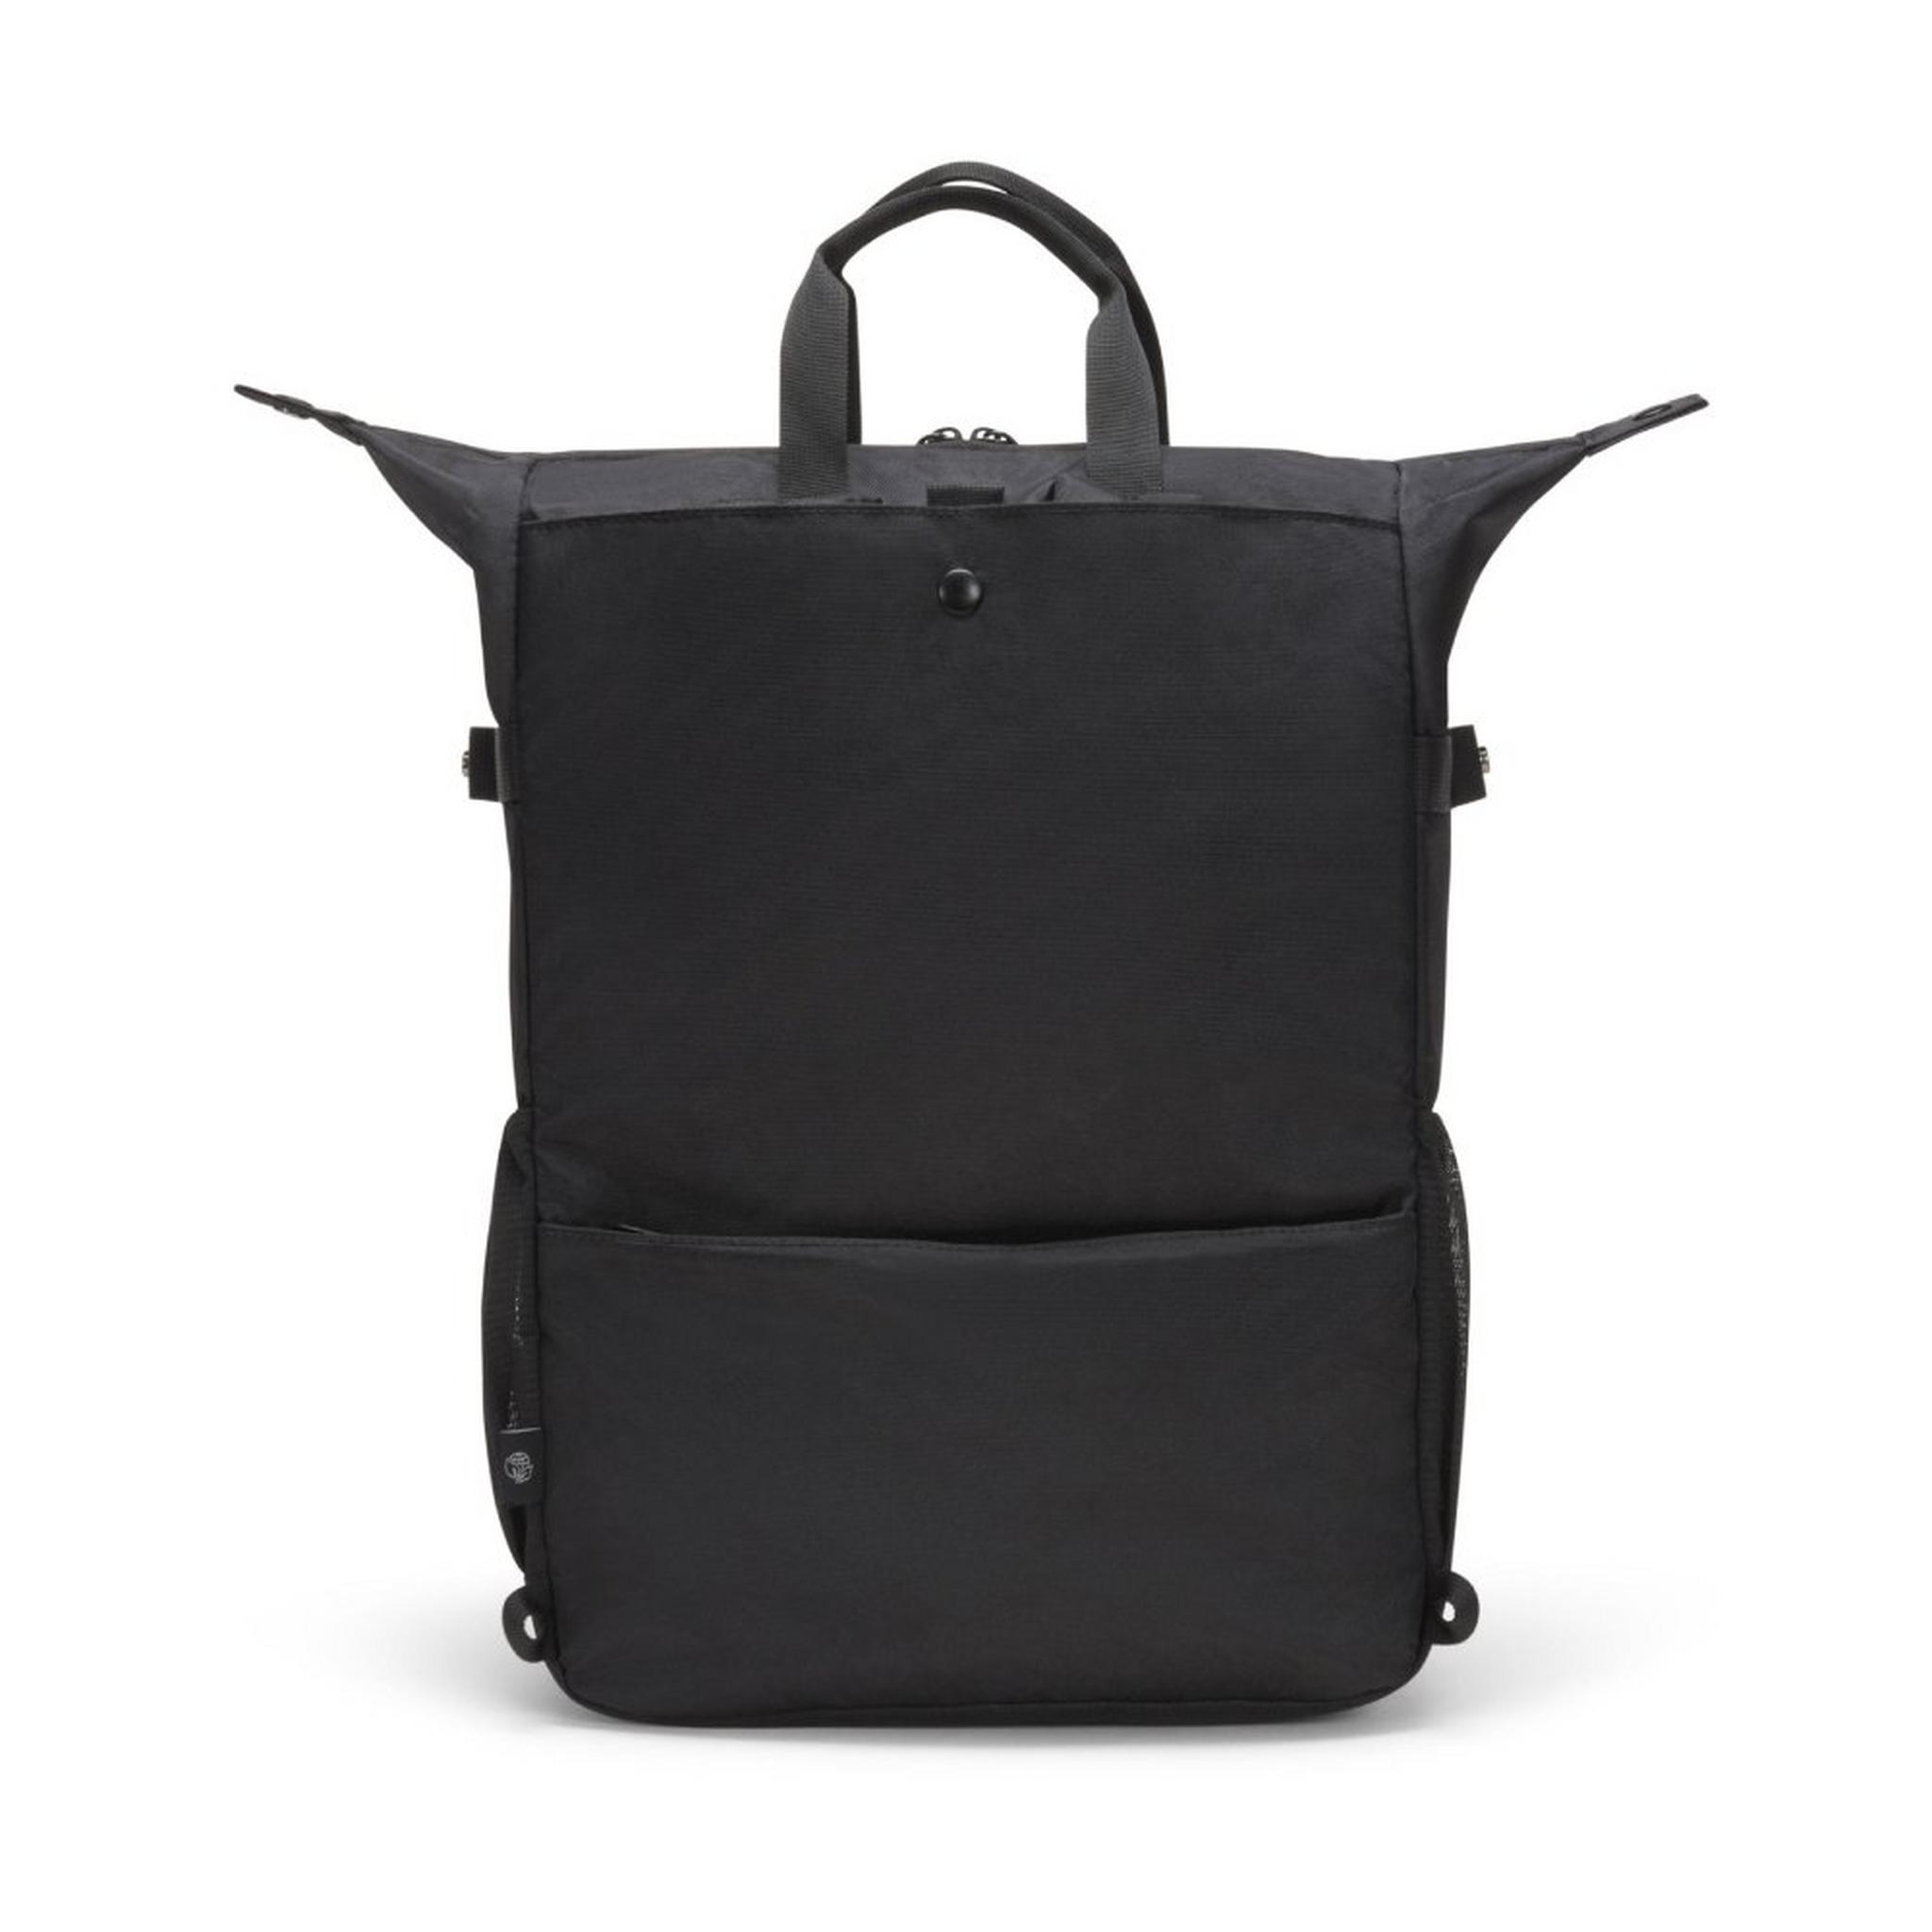 حقيبة ظهر ايكو دول جو للابتوب بحجم 15.6 بوصة من ديكوتا - أسود